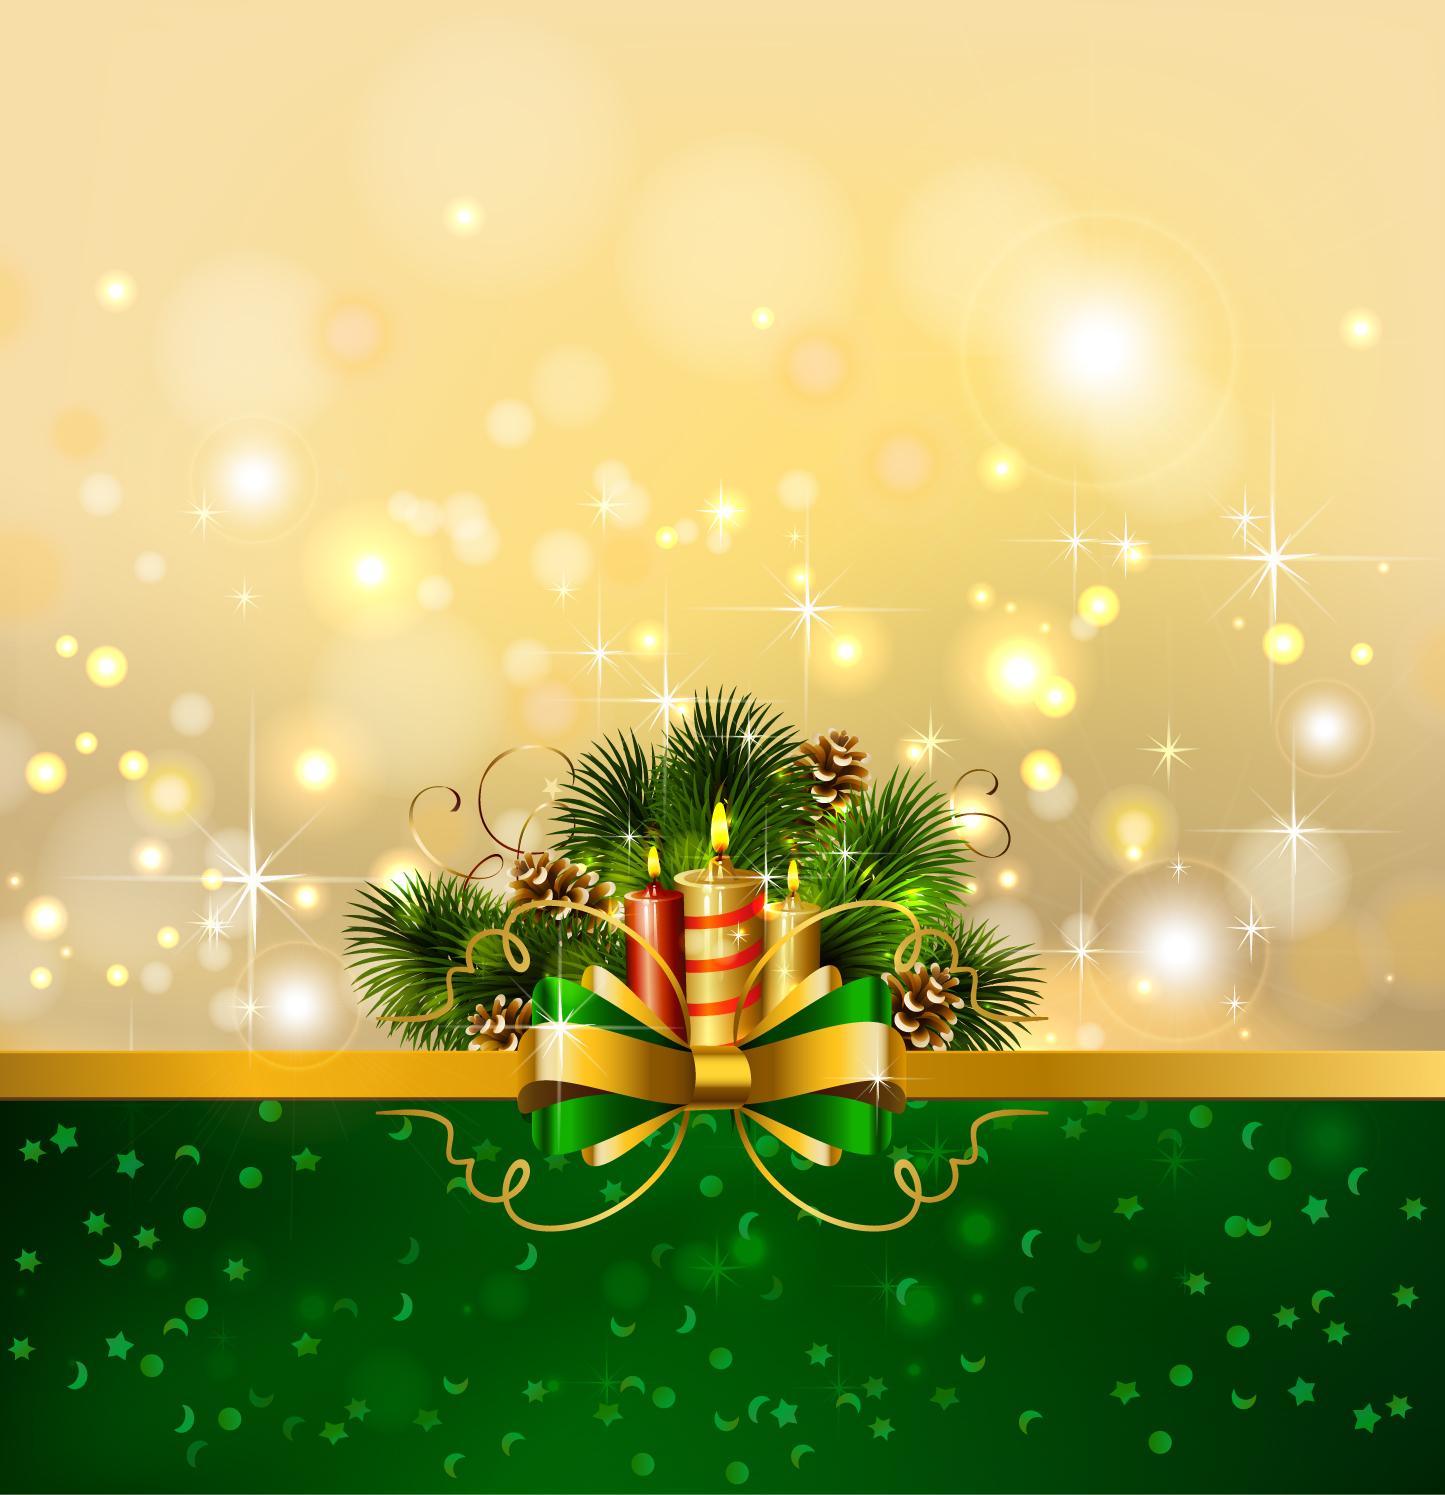 Christmas Background Image On